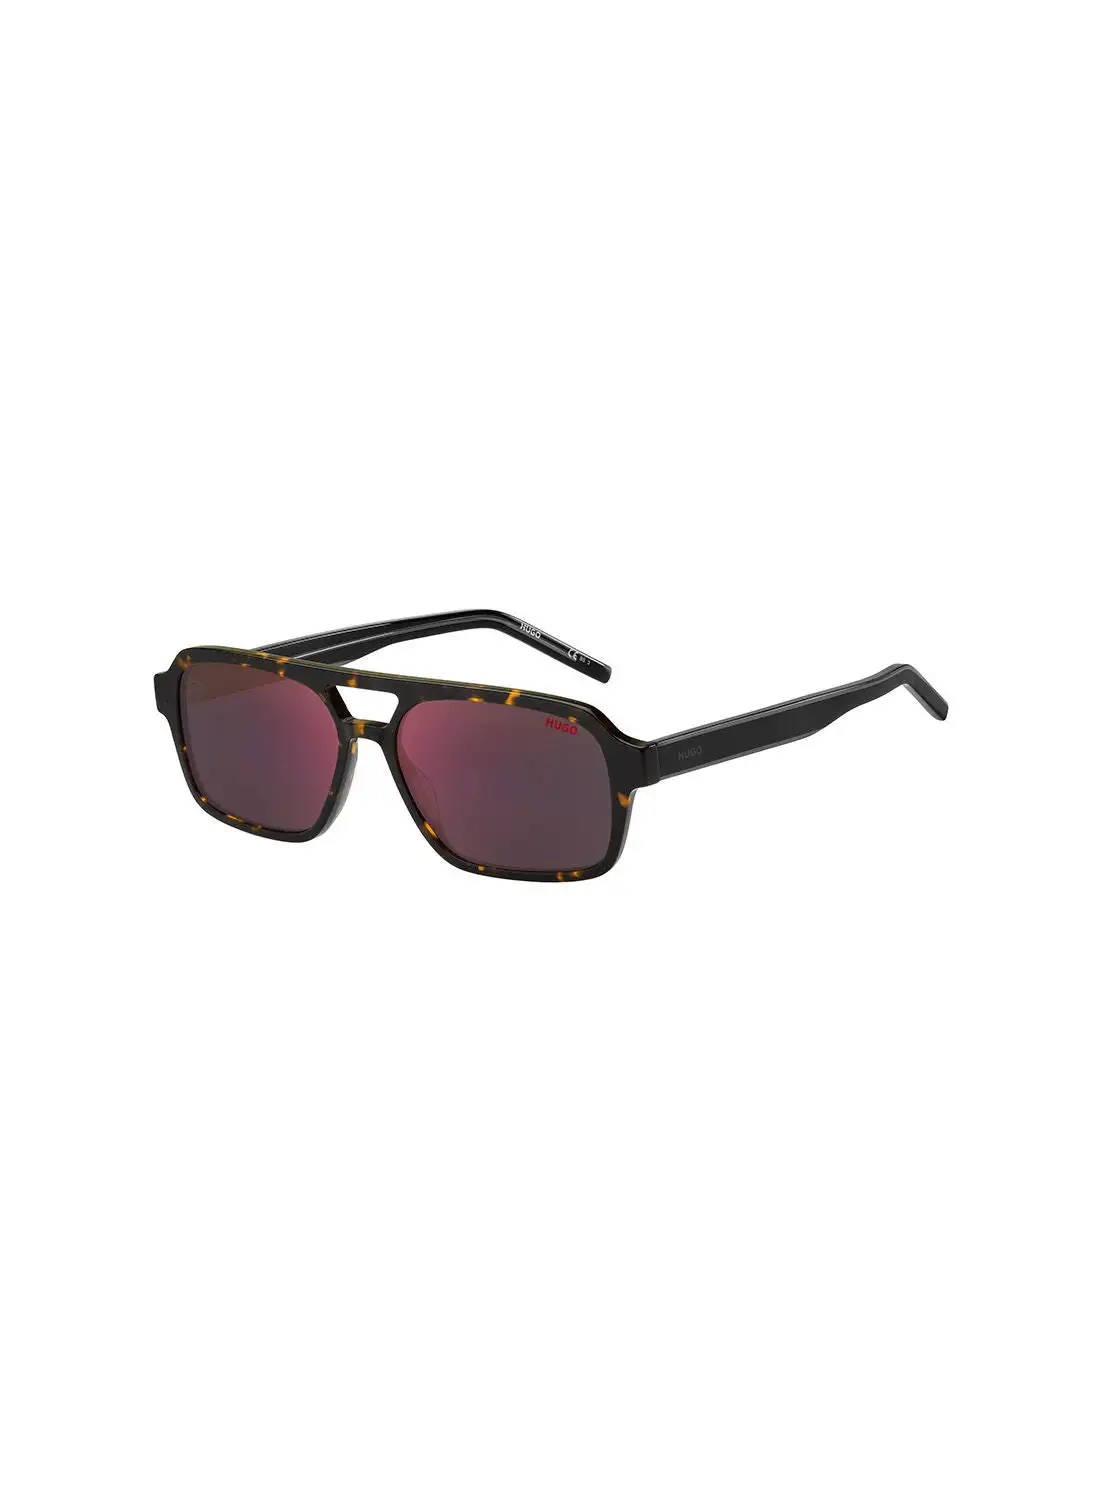 HUGO Men's UV Protection Rectangular Sunglasses - Hg 1241/S Havan Red 56 - Lens Size: 56 Mm